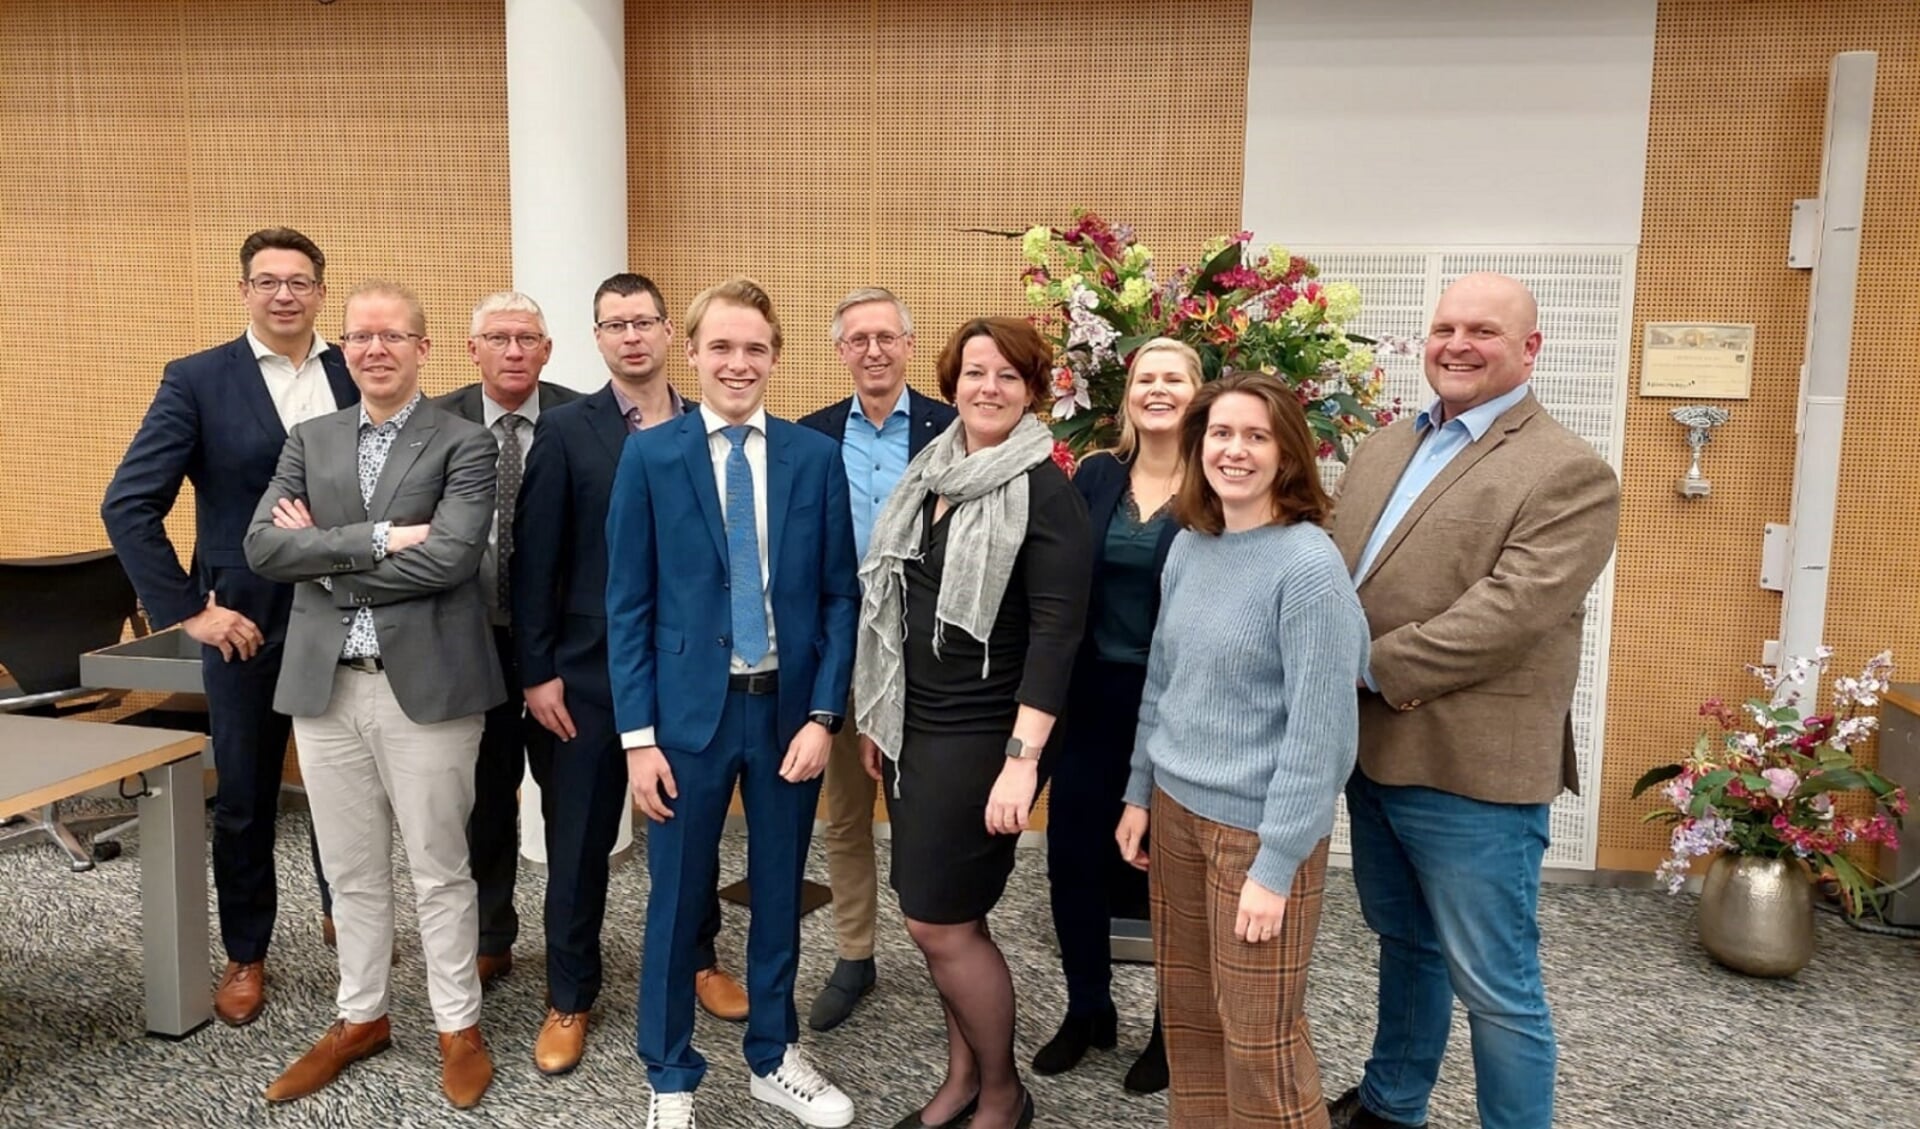 Het team waarmee de ChristenUnie Rijssen-Holten de gemeenteraadsverkiezingen van volgend jaar in gaat.